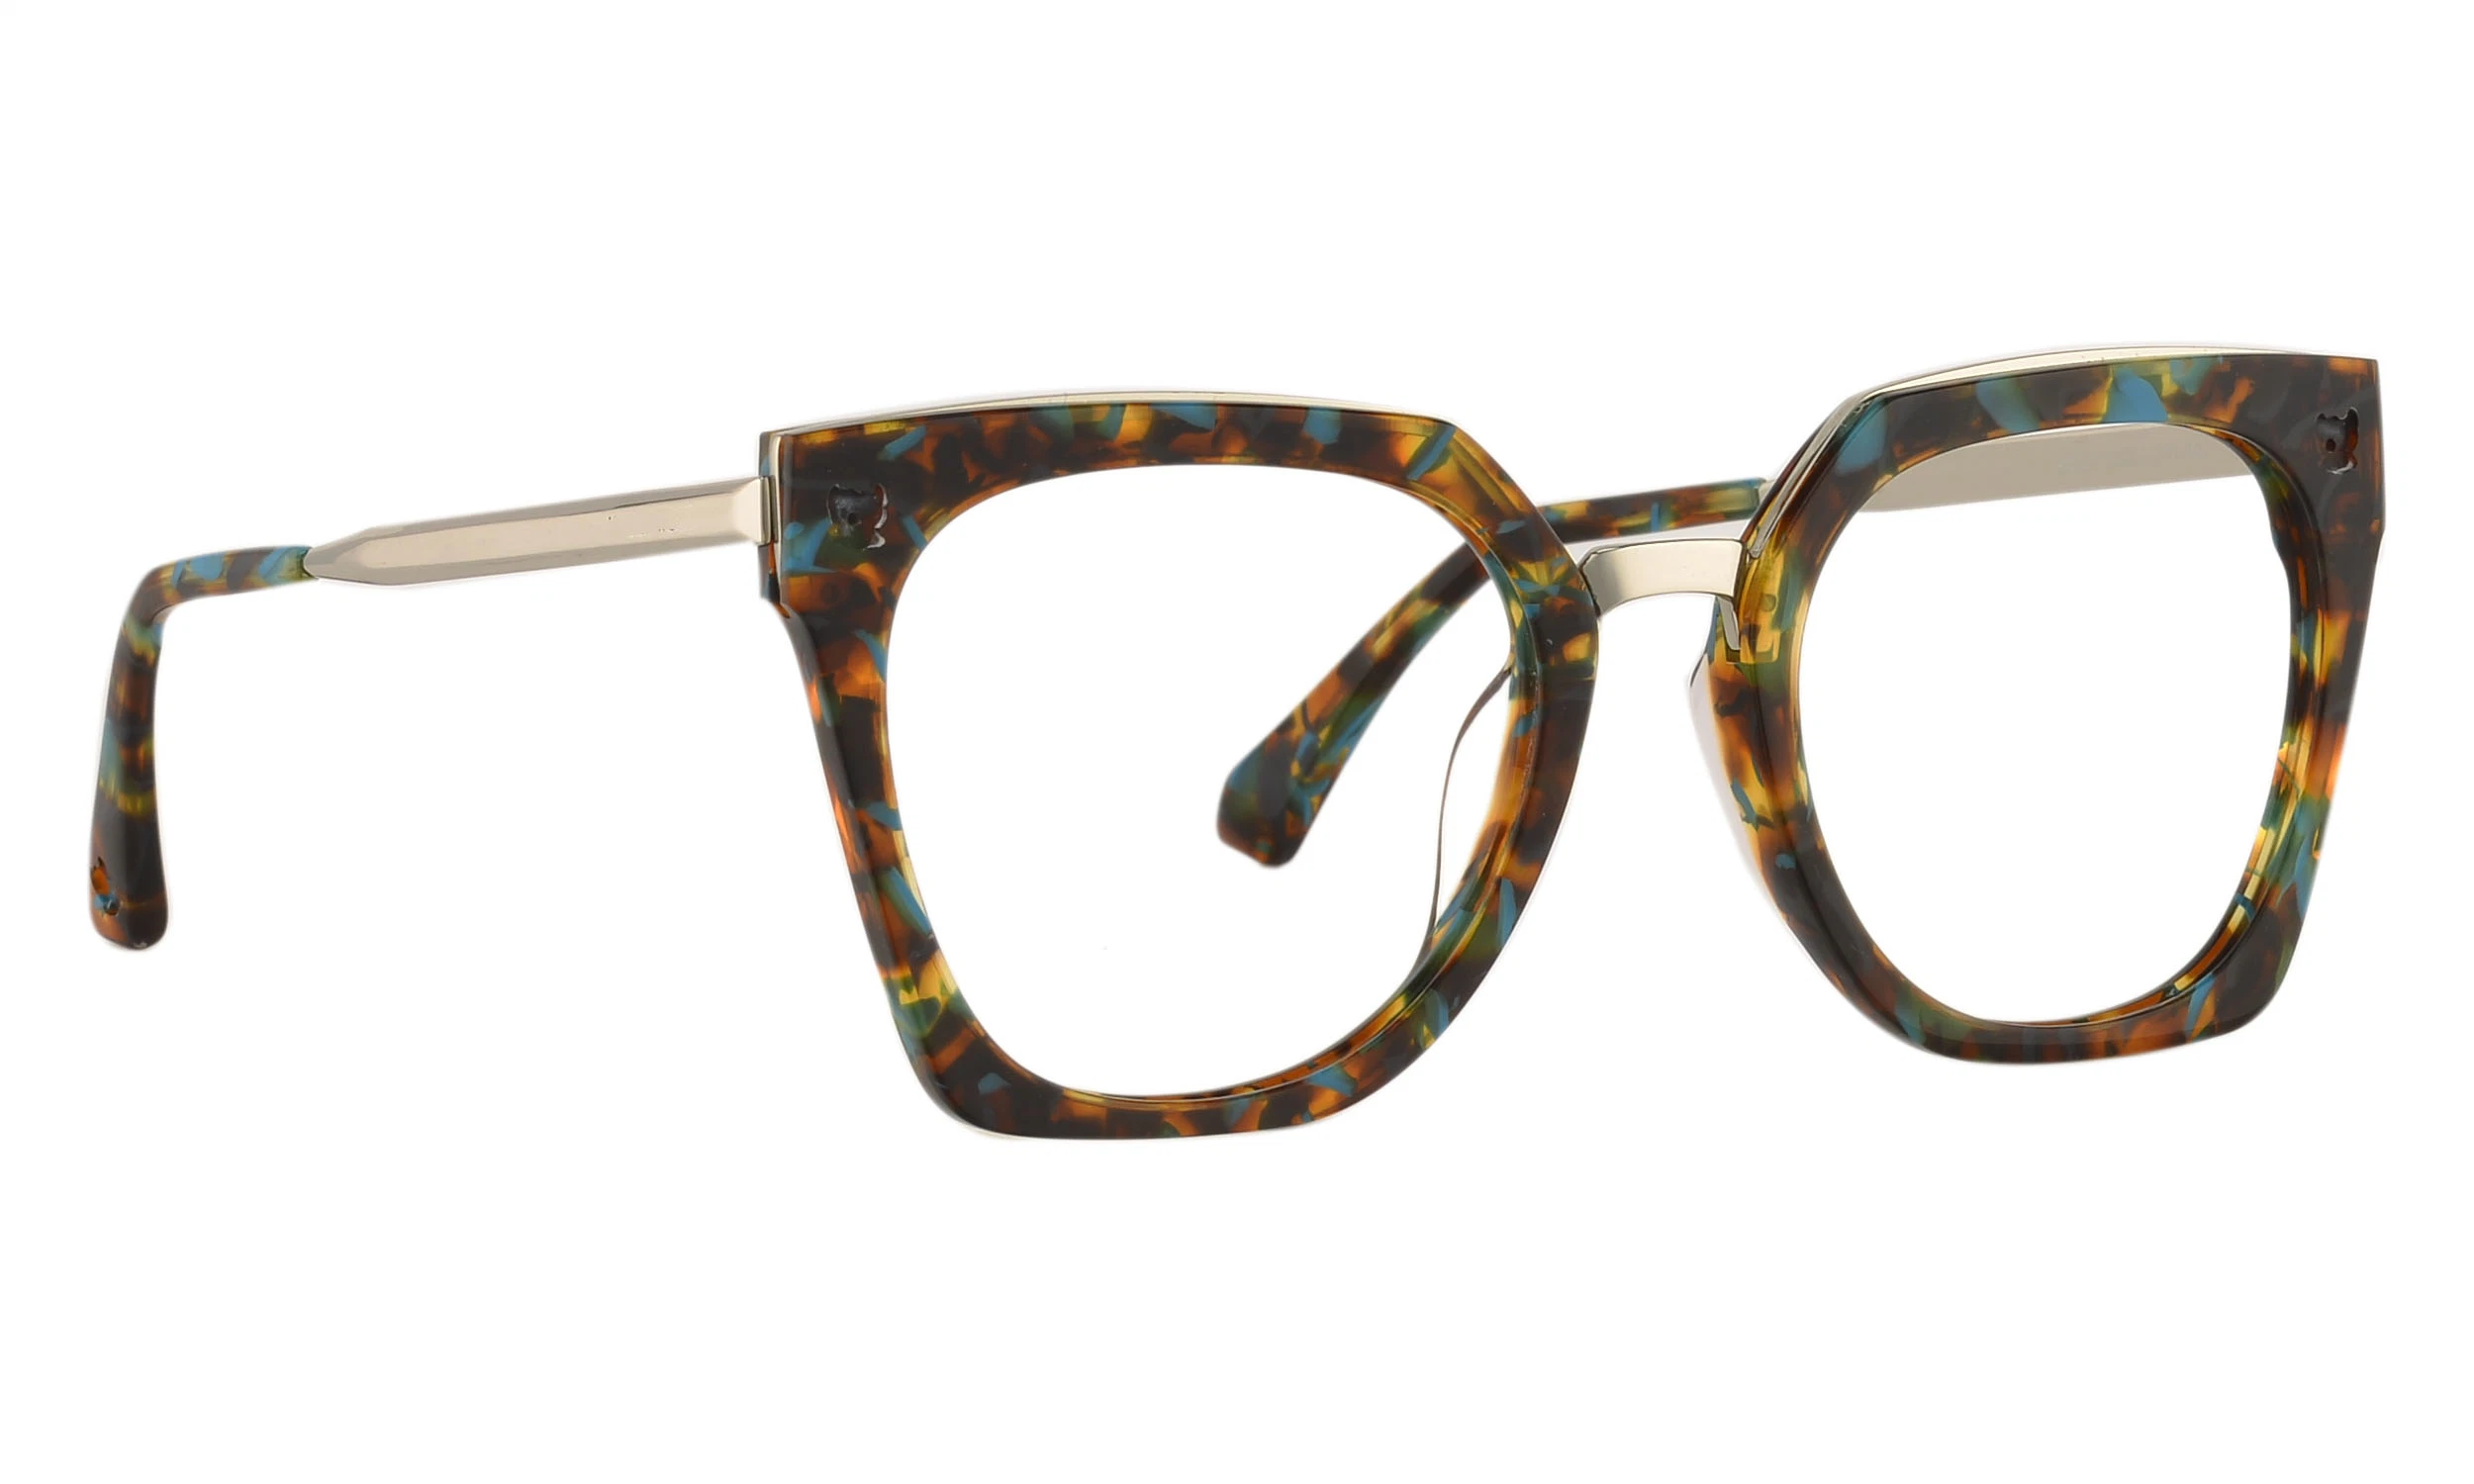 Meilleure vente marque conçu de lunettes de lecture